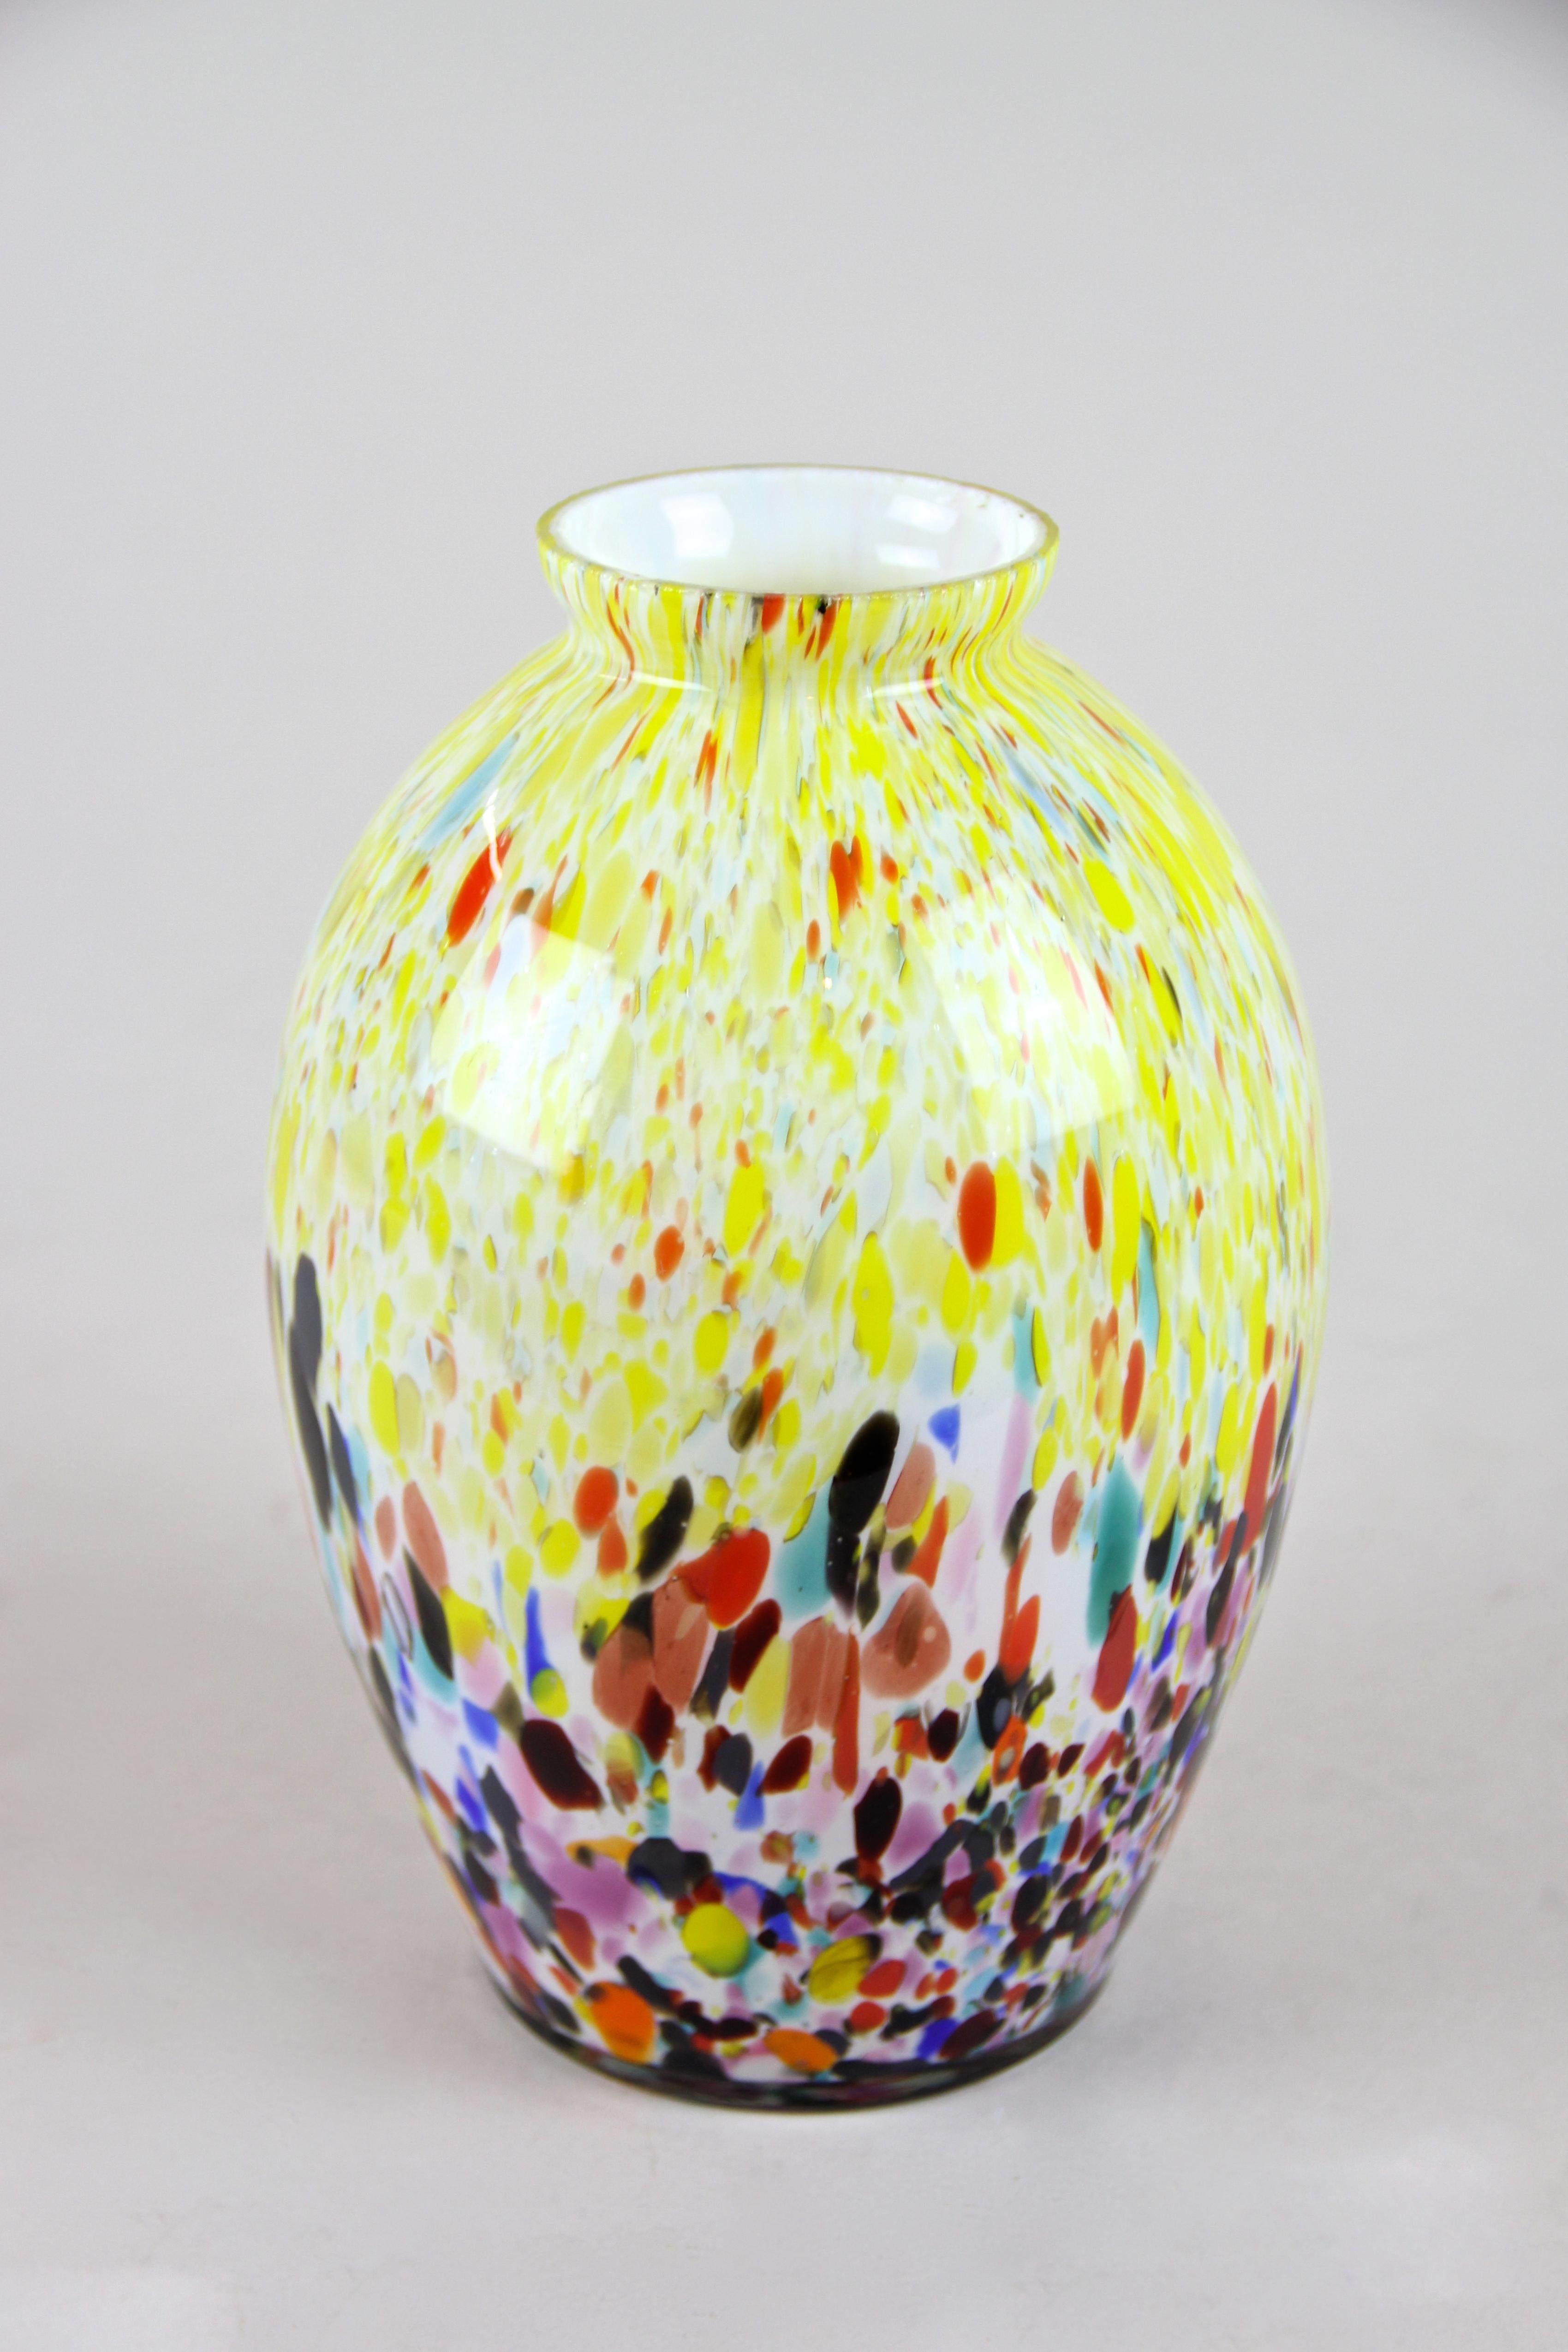 Schöne mehrfarbige Vase aus Murano-Glas aus der Mitte des Jahrhunderts, um 1960. Diese bauchig geformte Glasvase zeigt ein sehr schönes Tupfenmuster in vielen verschiedenen Farbtönen von gelb, blau, türkis, rot, orange bis hin zu rosa und schwarz.